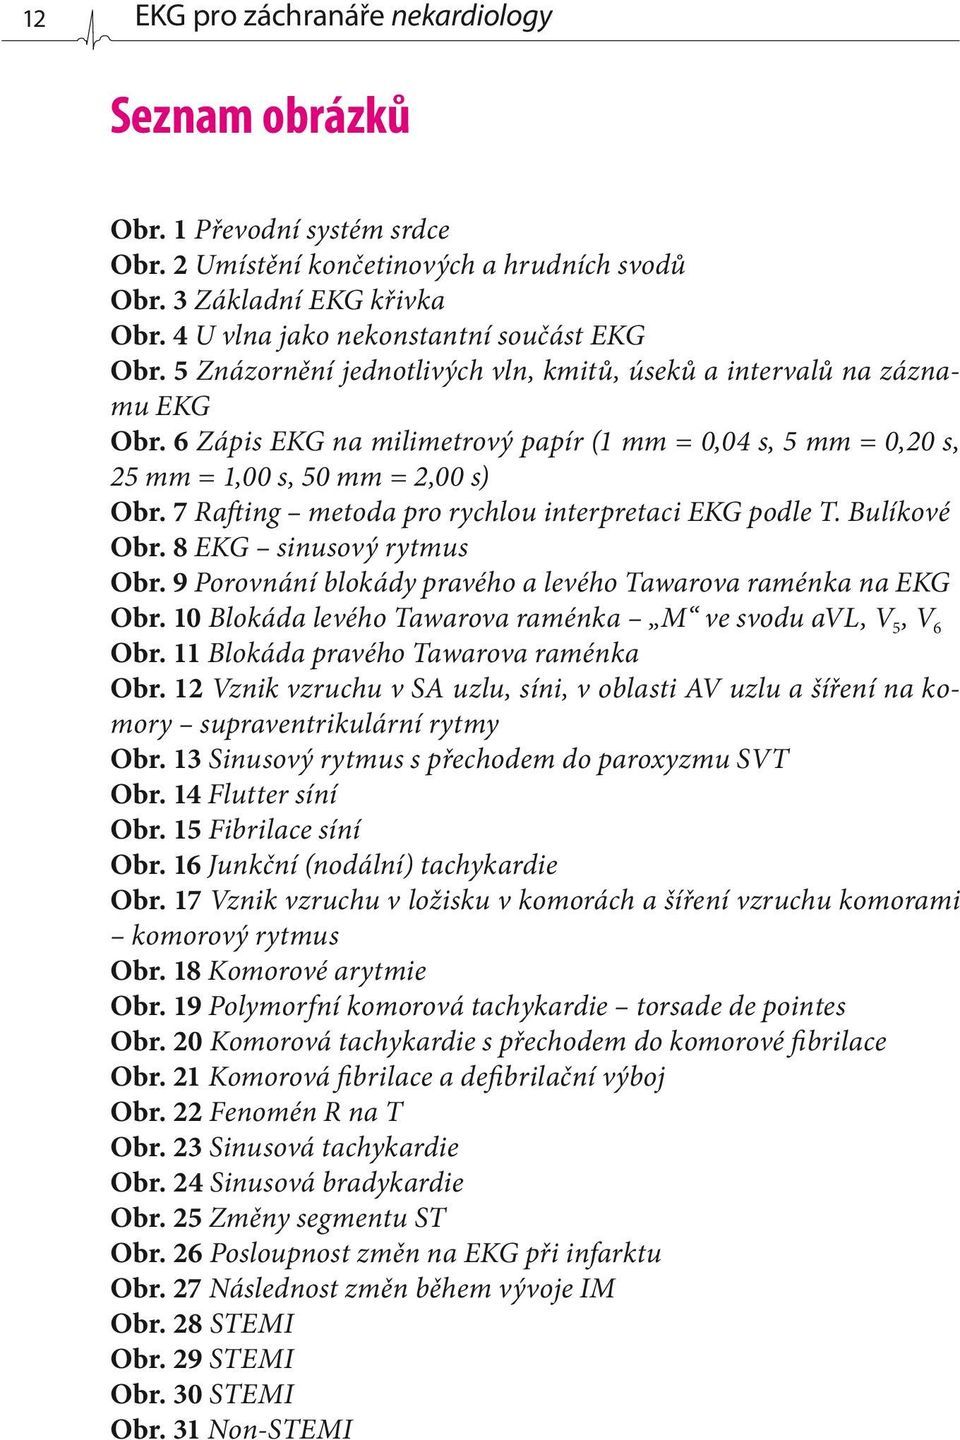 6 Zápis EKG na milimetrový papír (1 mm = 0,04 s, 5 mm = 0,20 s, 25 mm = 1,00 s, 50 mm = 2,00 s) Obr. 7 Rafting metoda pro rychlou interpretaci EKG podle T. Bulíkové Obr. 8 EKG sinusový rytmus Obr.